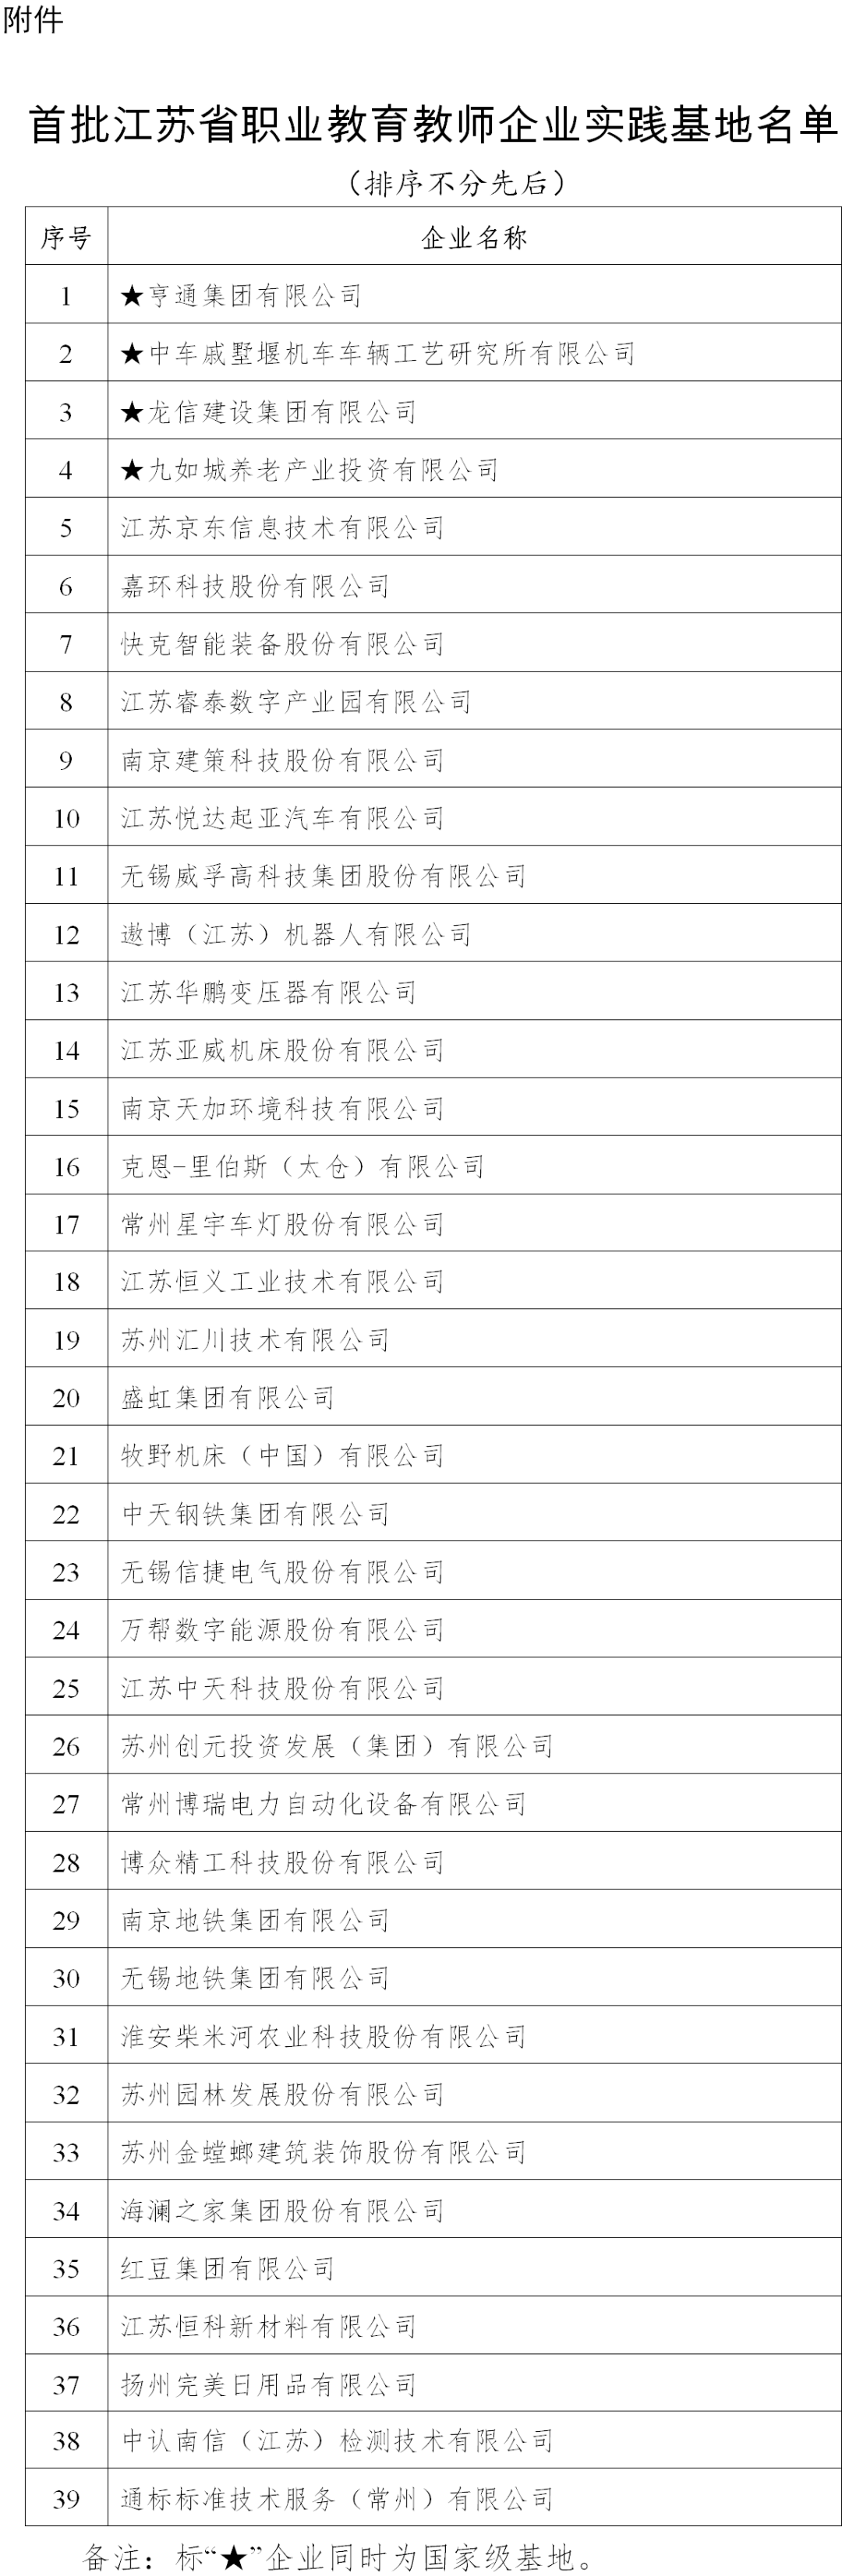 江苏省教育厅关于公布首批江苏省职业教育教师企业实践基地名单的通知